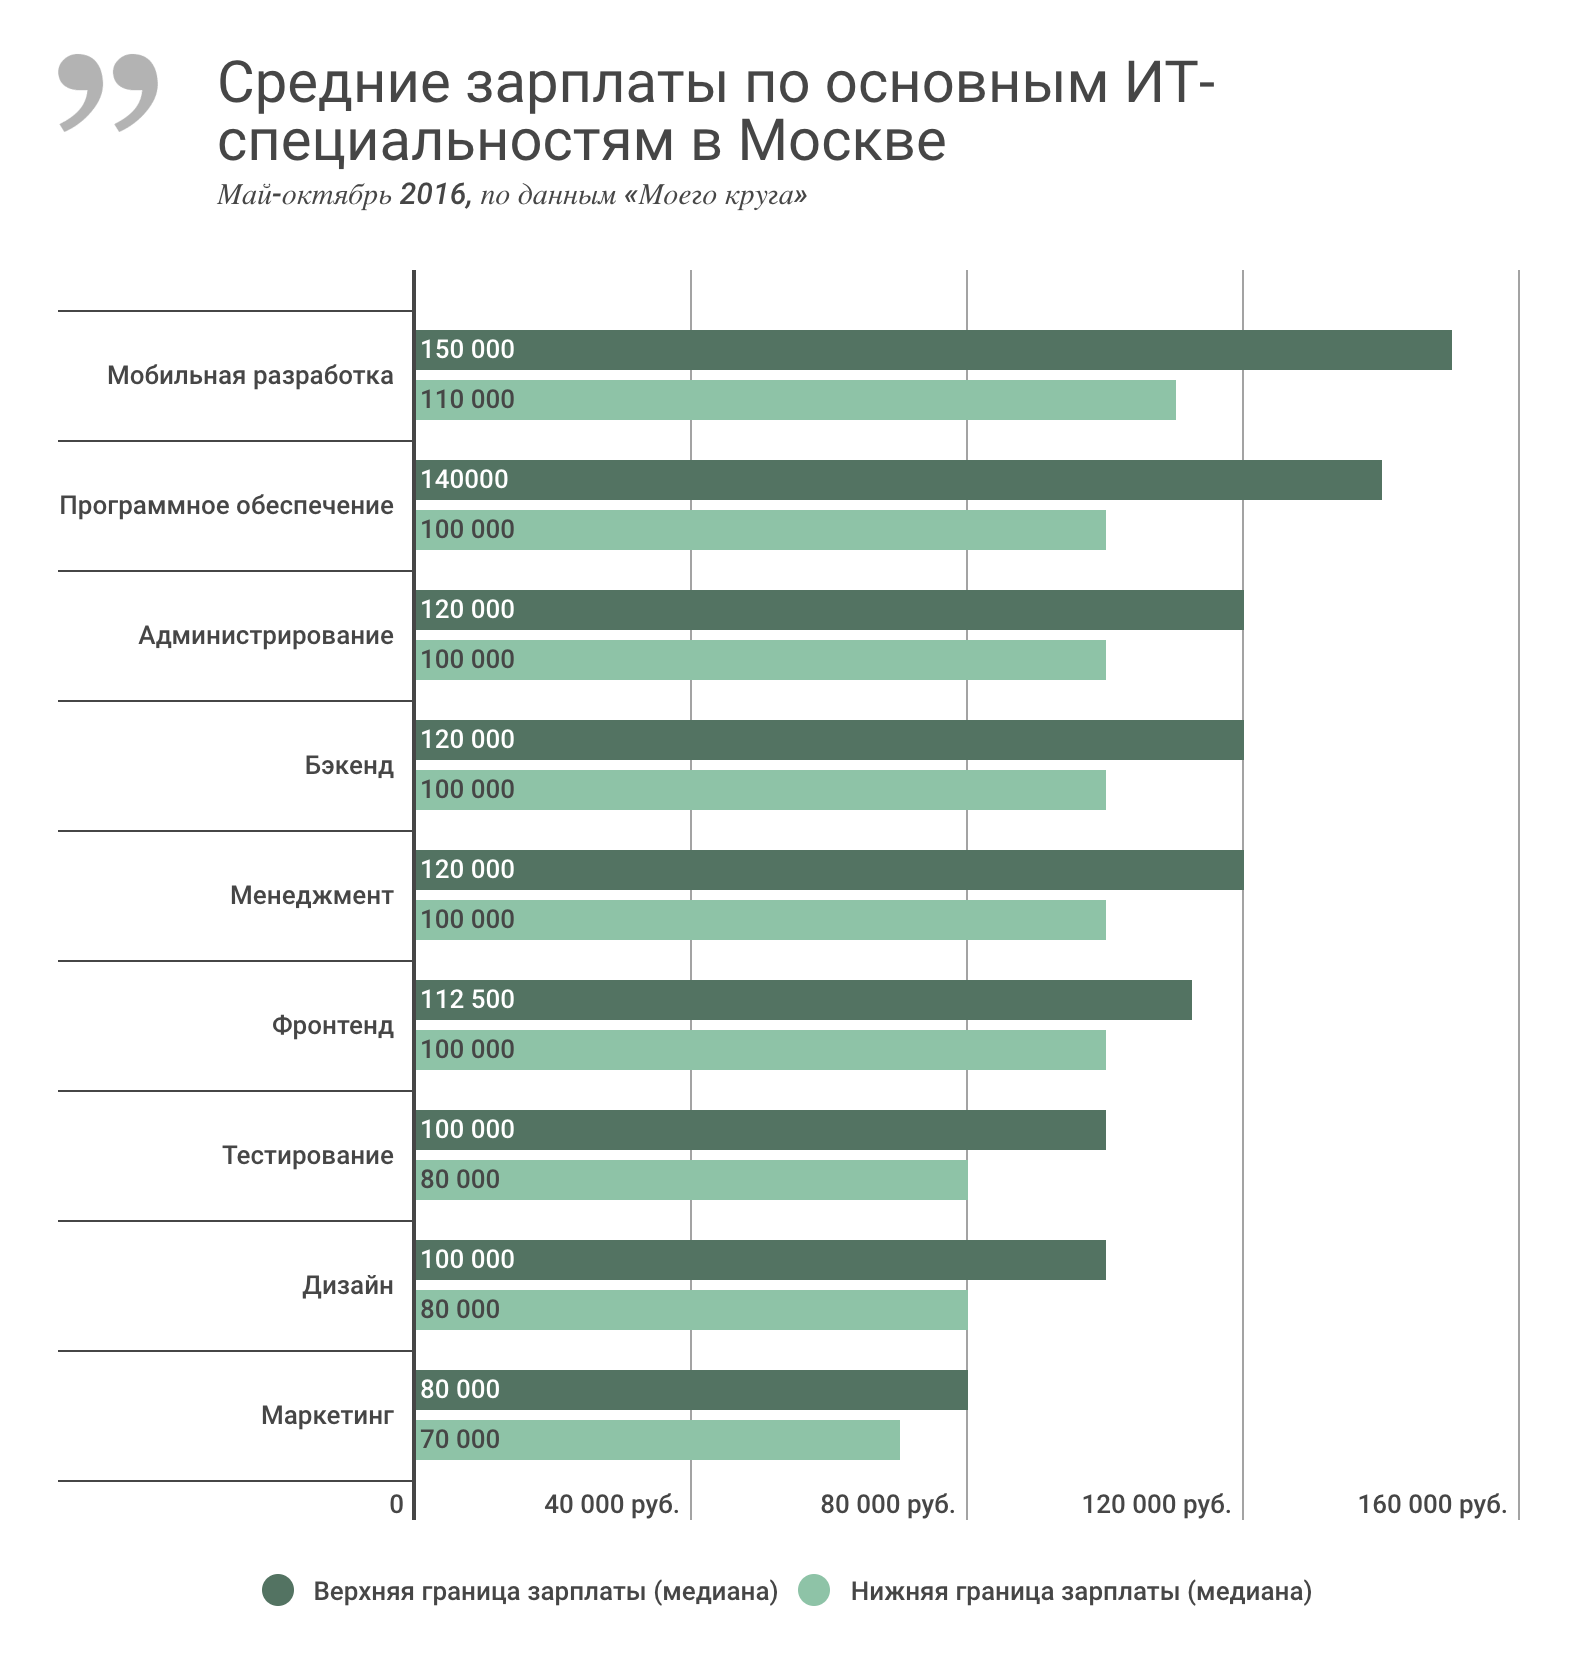 Зарплаты IT-специалистов в России за последние полгода, май-октябрь 2016 - 2